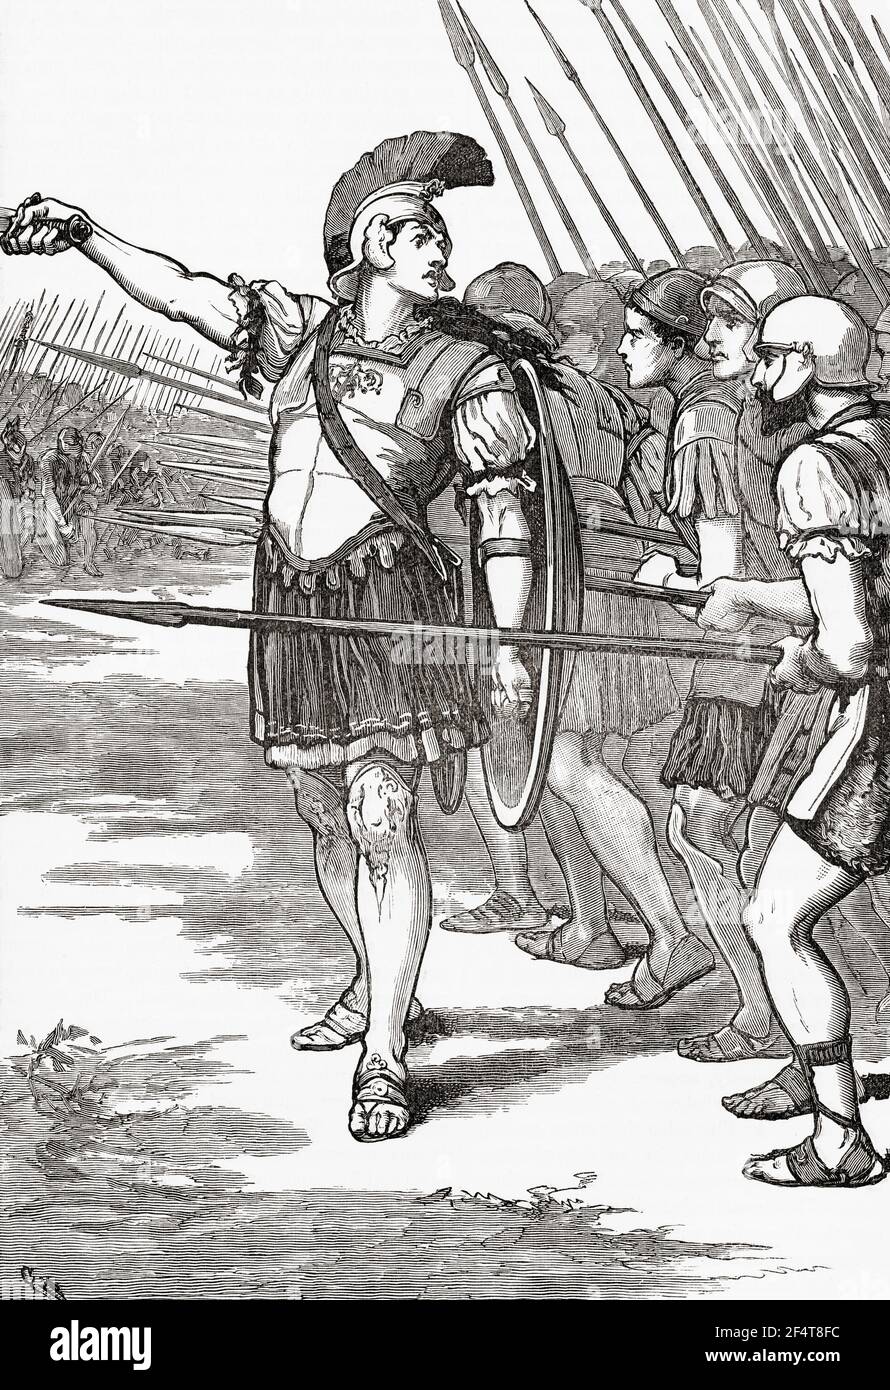 Pelopidas führt die Thebans in der Schlacht von Leuctra, 6. Juli, 371 BC. Aus Cassells Universal History, veröffentlicht 1888. Stockfoto